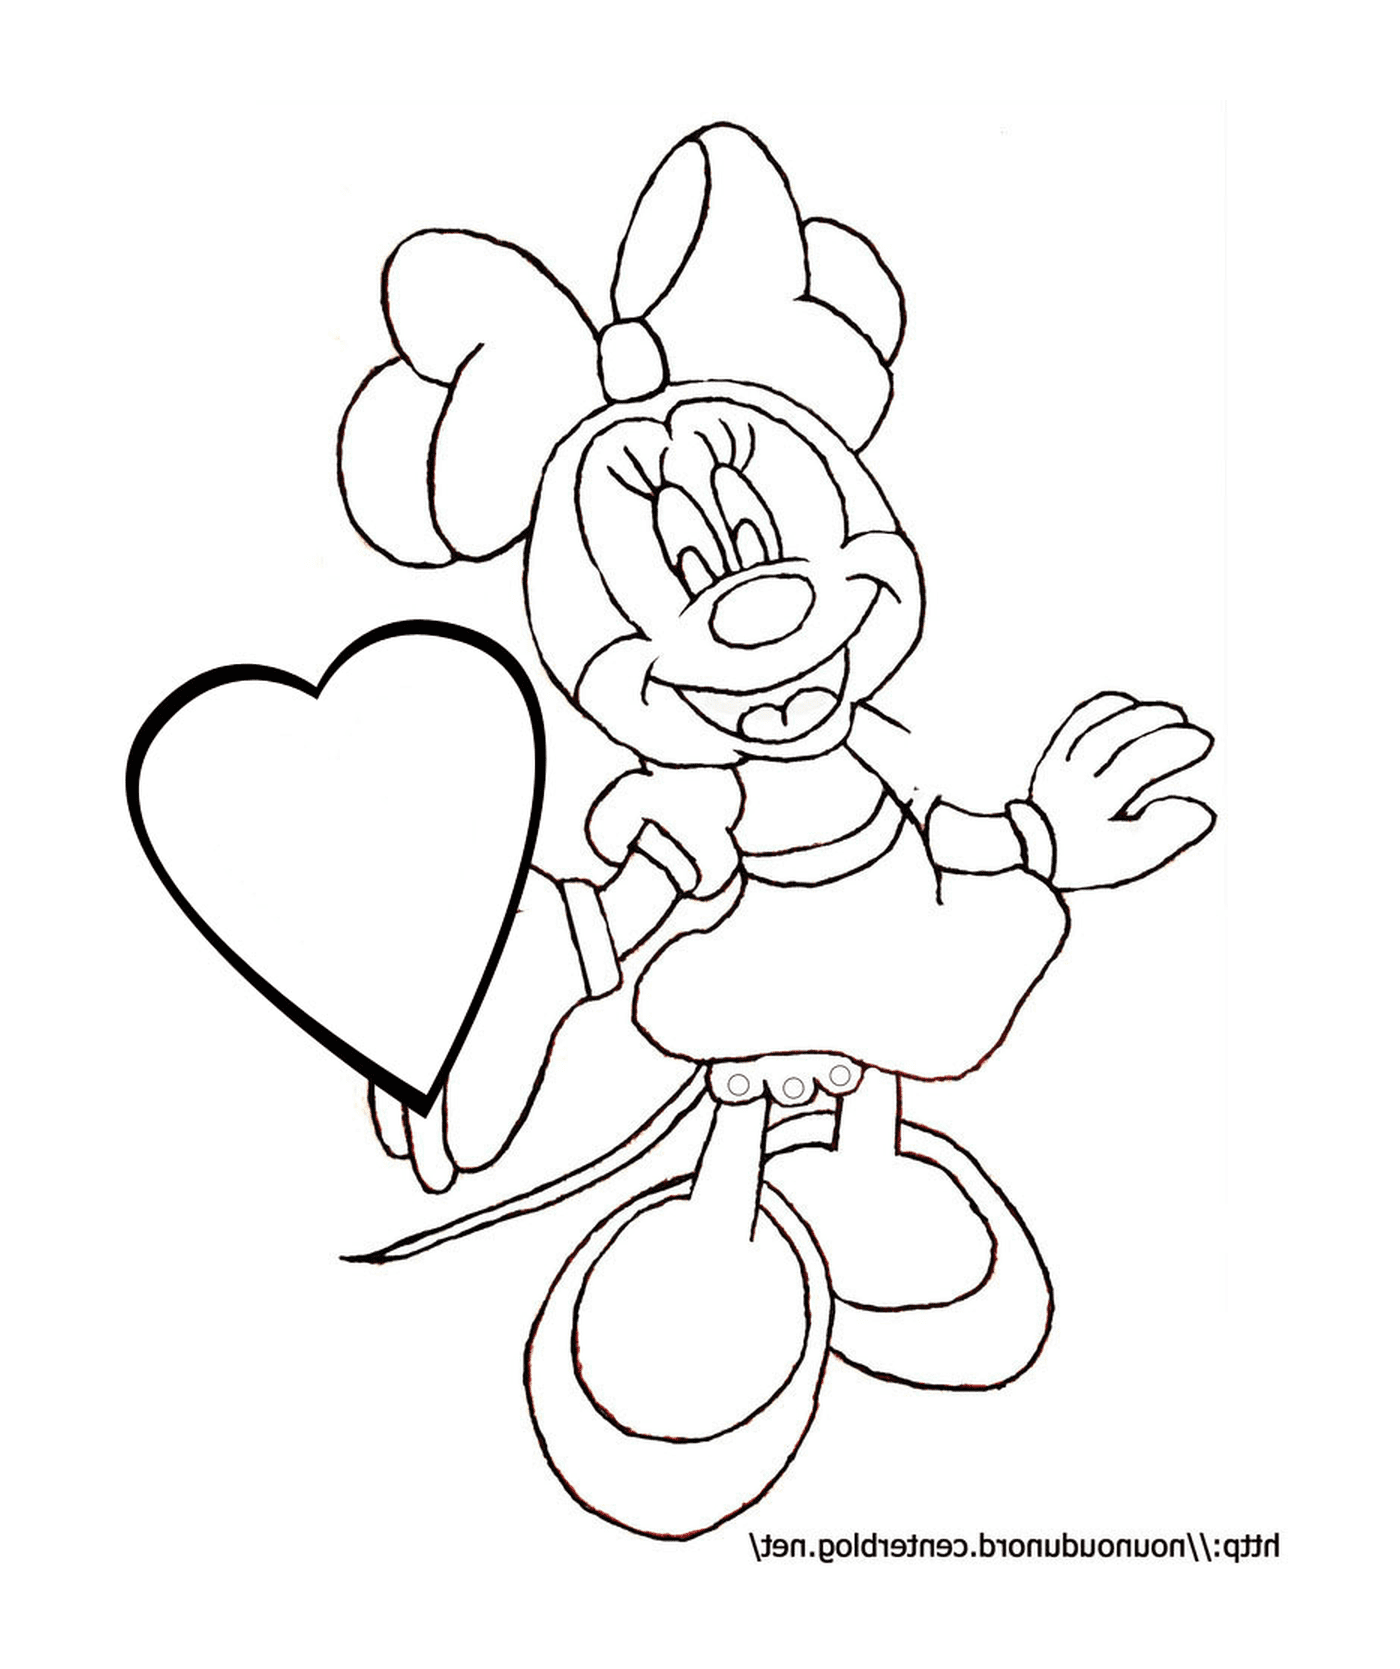  Minnie Mouse com um balão em forma de coração 